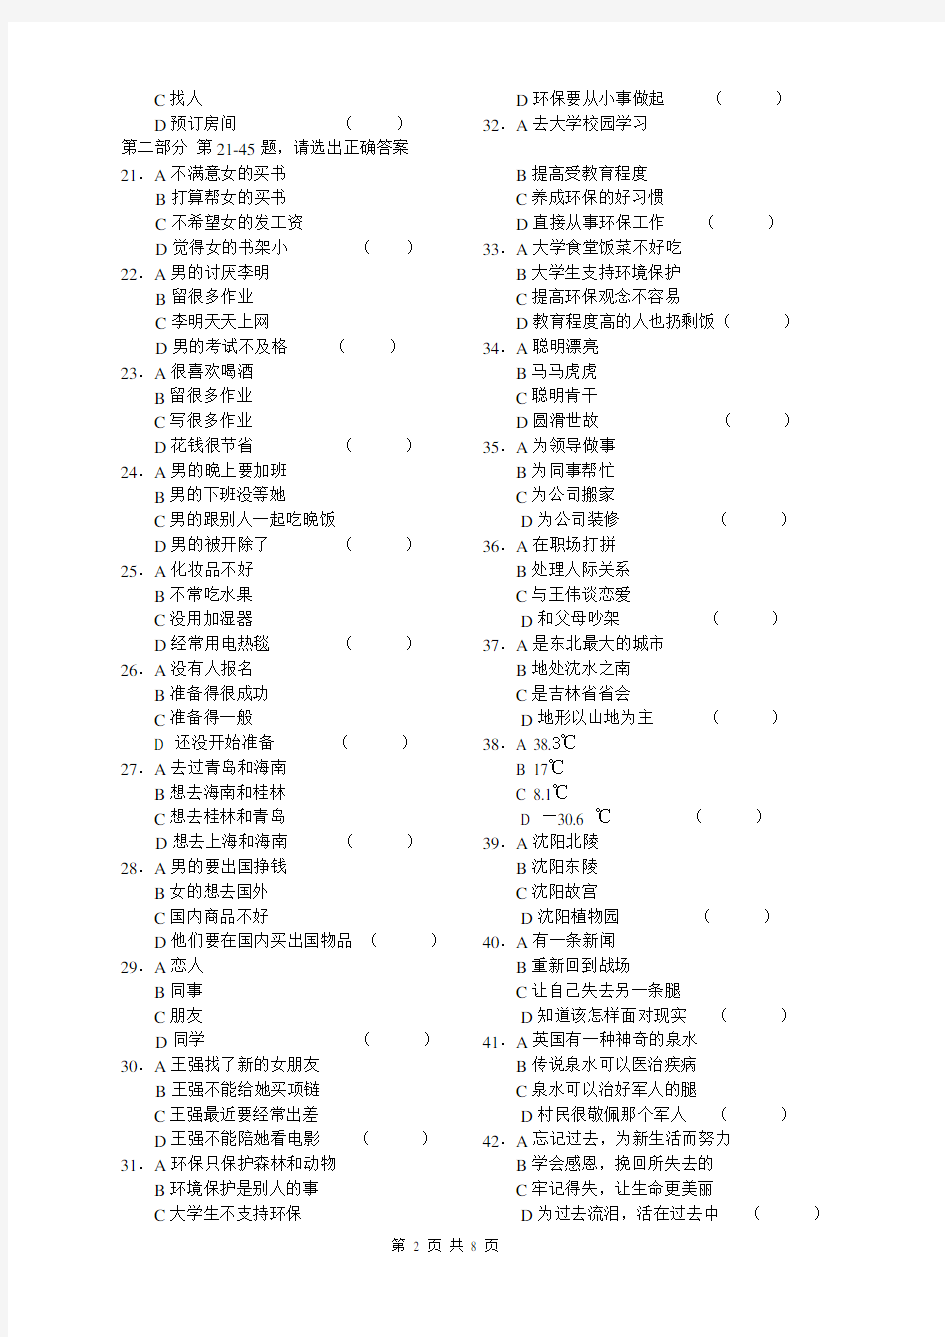 HSK 汉语水平考试 5级 真题